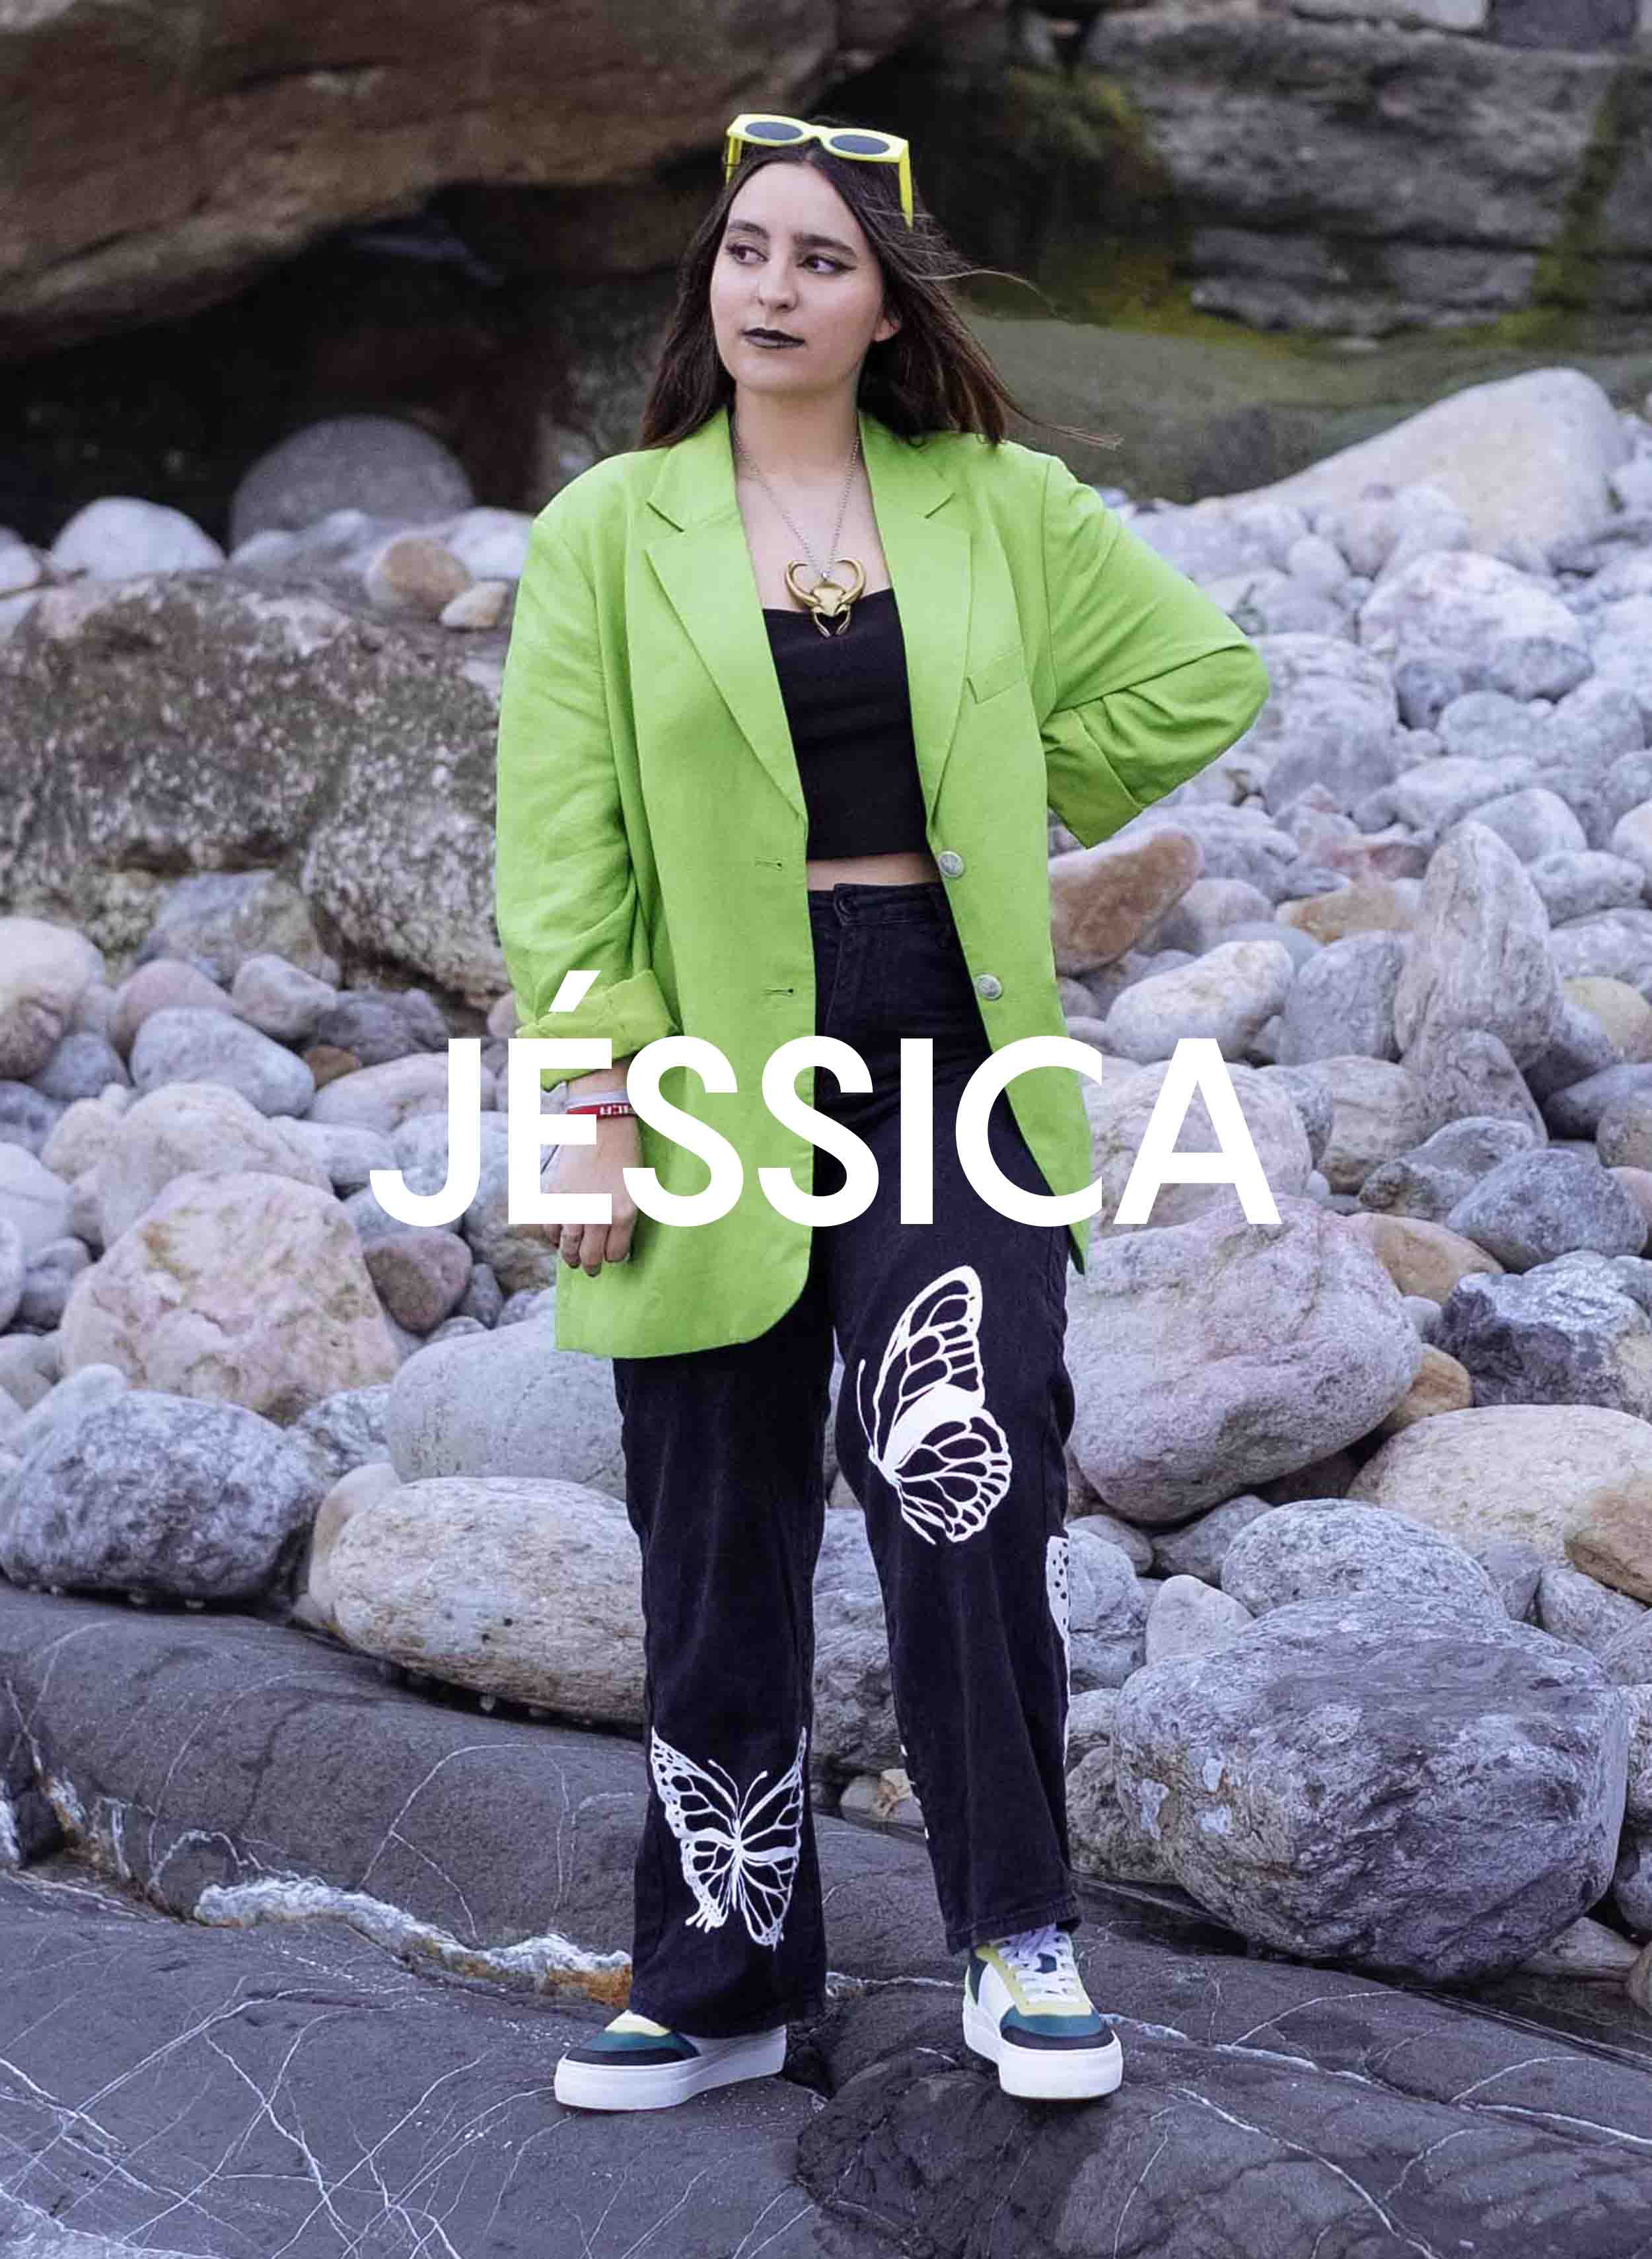 Jessica in grüner Jacke und schwarzer Hose auf Felsen stehend, Diverge sneakers, Förderung sozialer Auswirkungen und maßgefertigter Schuhe im Rahmen des IMAGINE-Projekts.